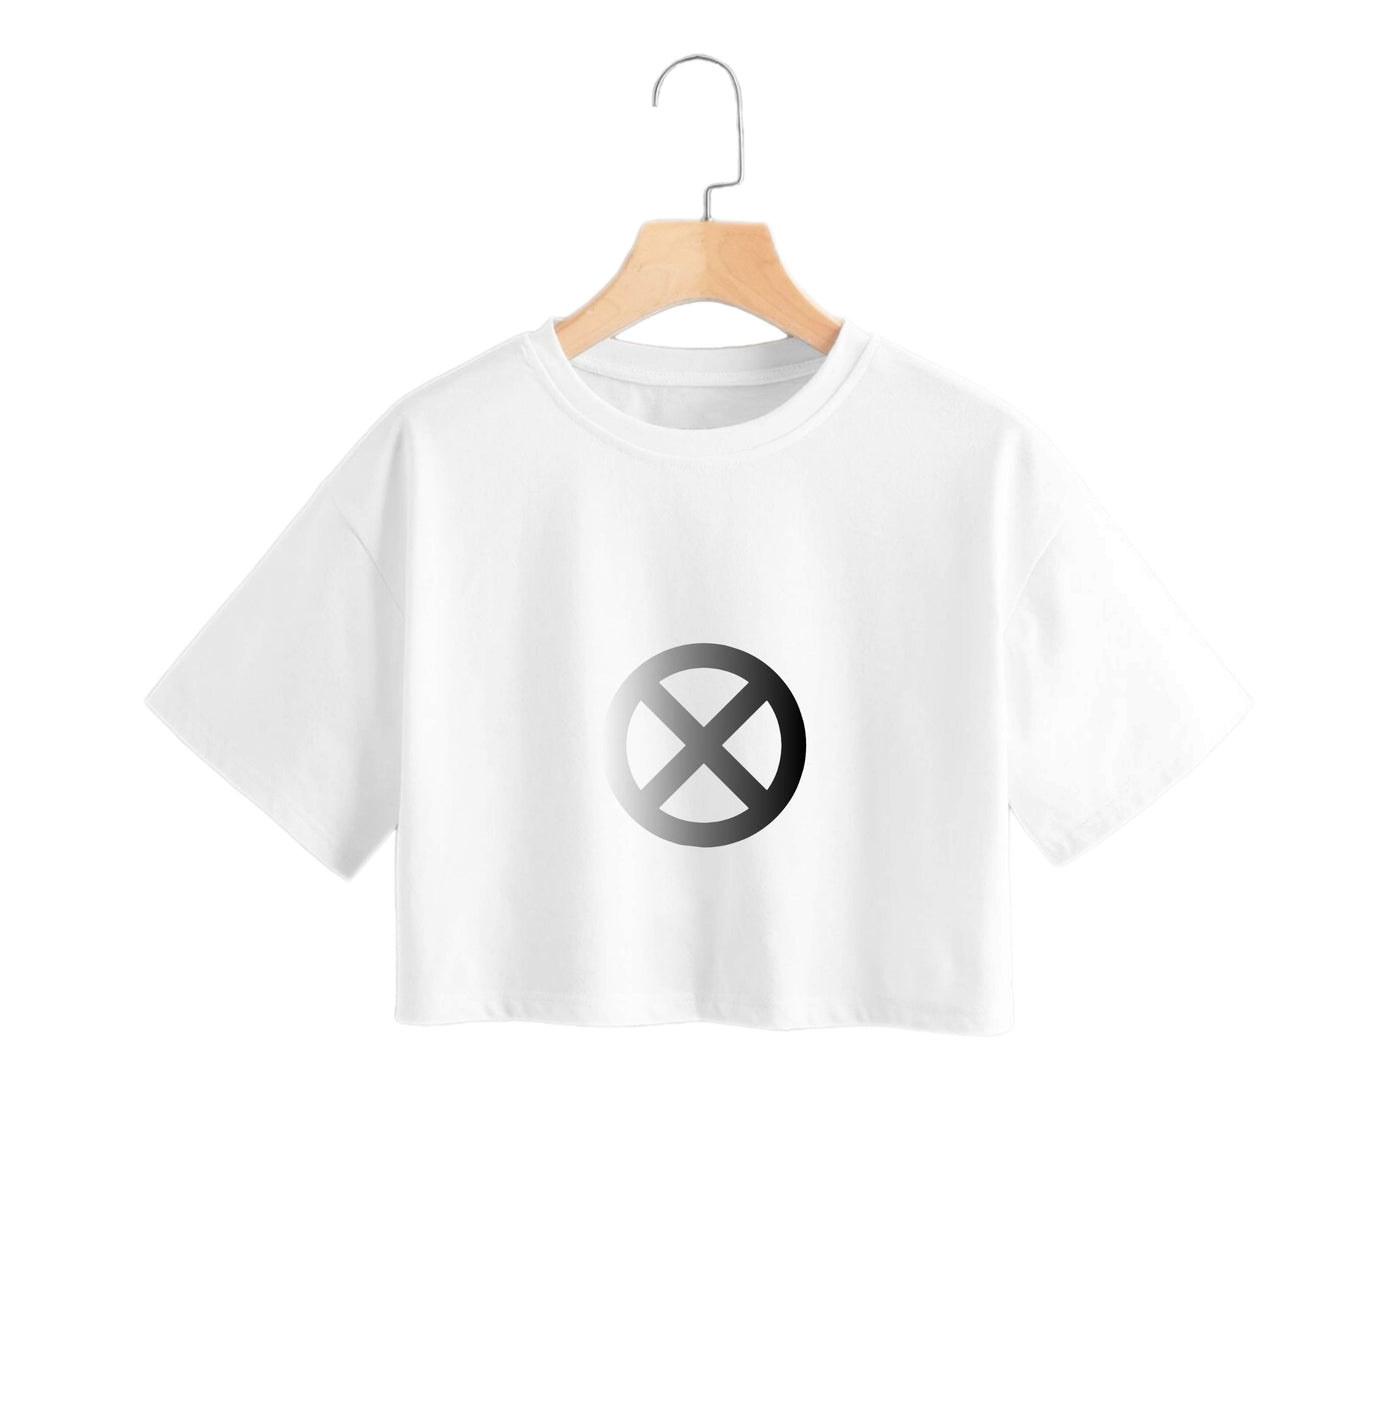 X Logo - X-Men Crop Top